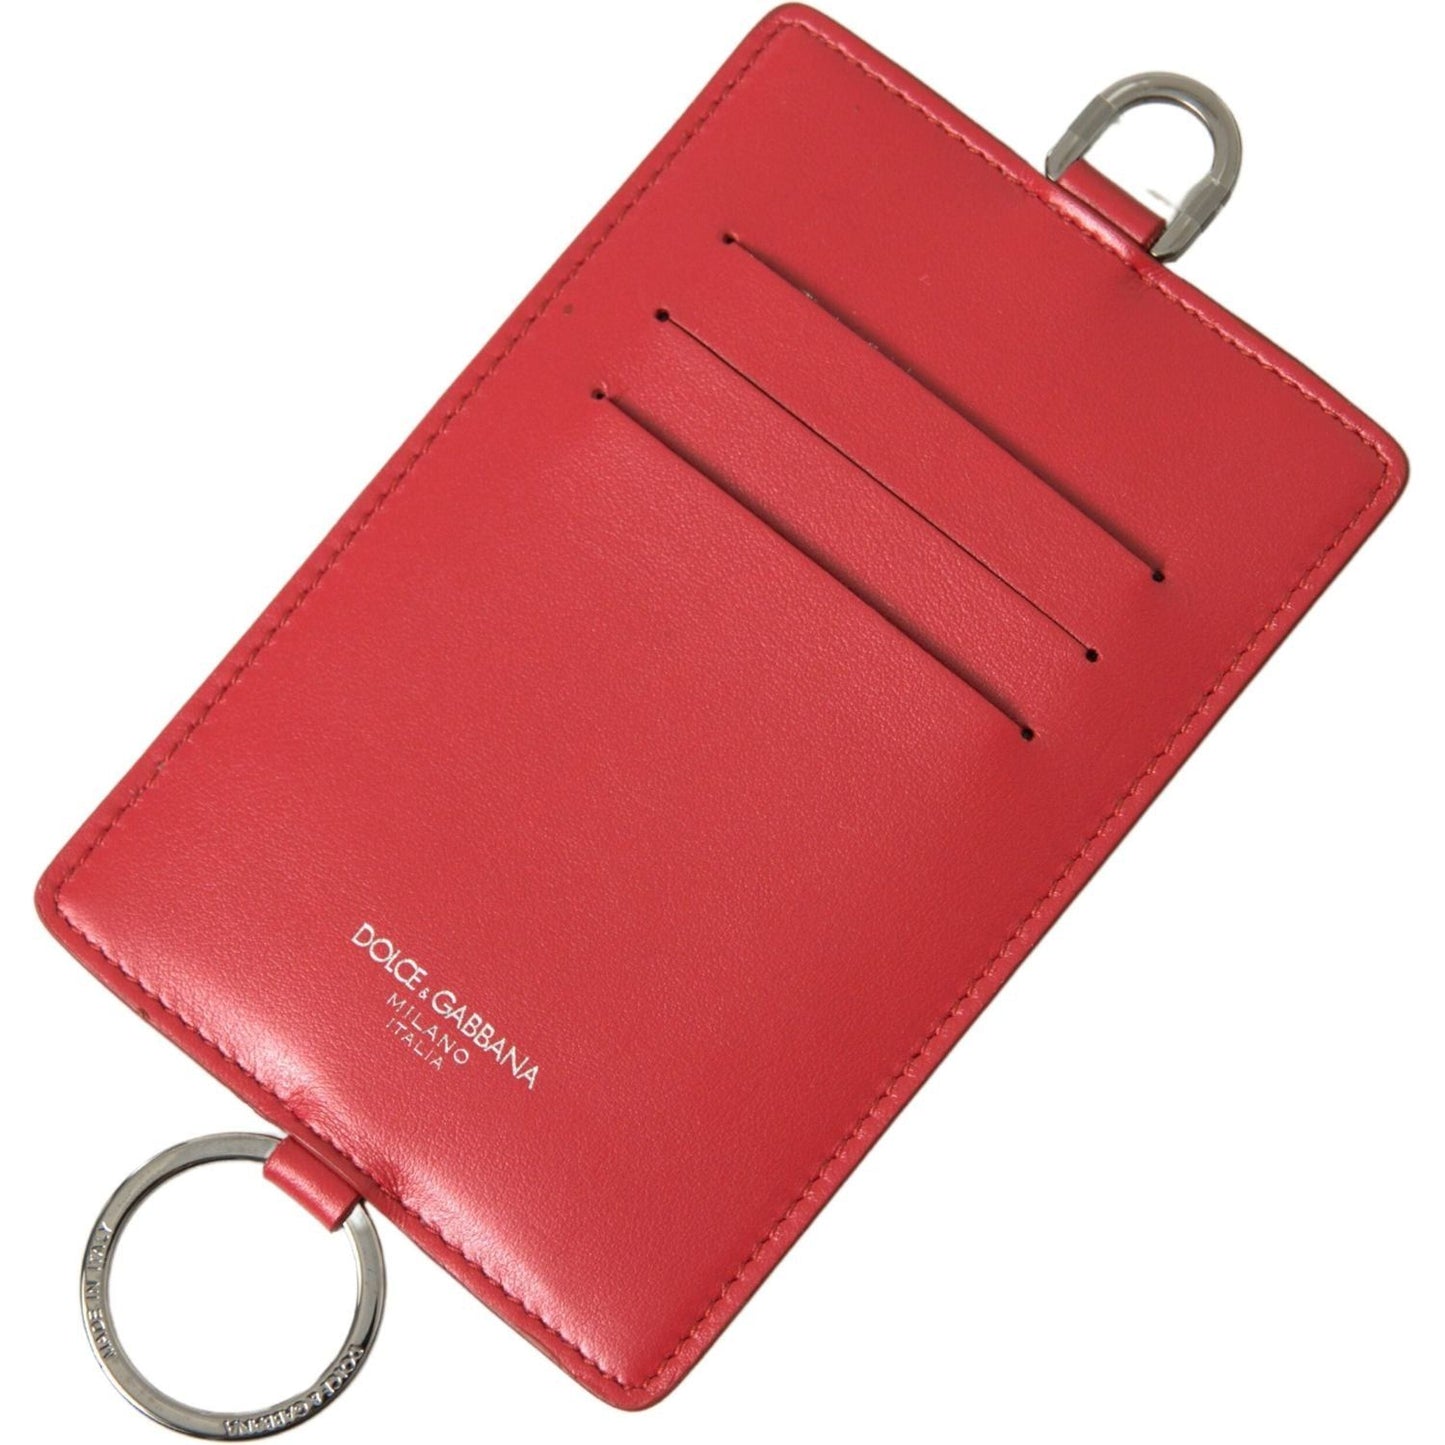 Dolce & Gabbana Elegant Red Leather Lanyard Card Holder red-leather-lanyard-logo-card-holder-men-wallet 465A4553-scaled-634046bb-13e.jpg